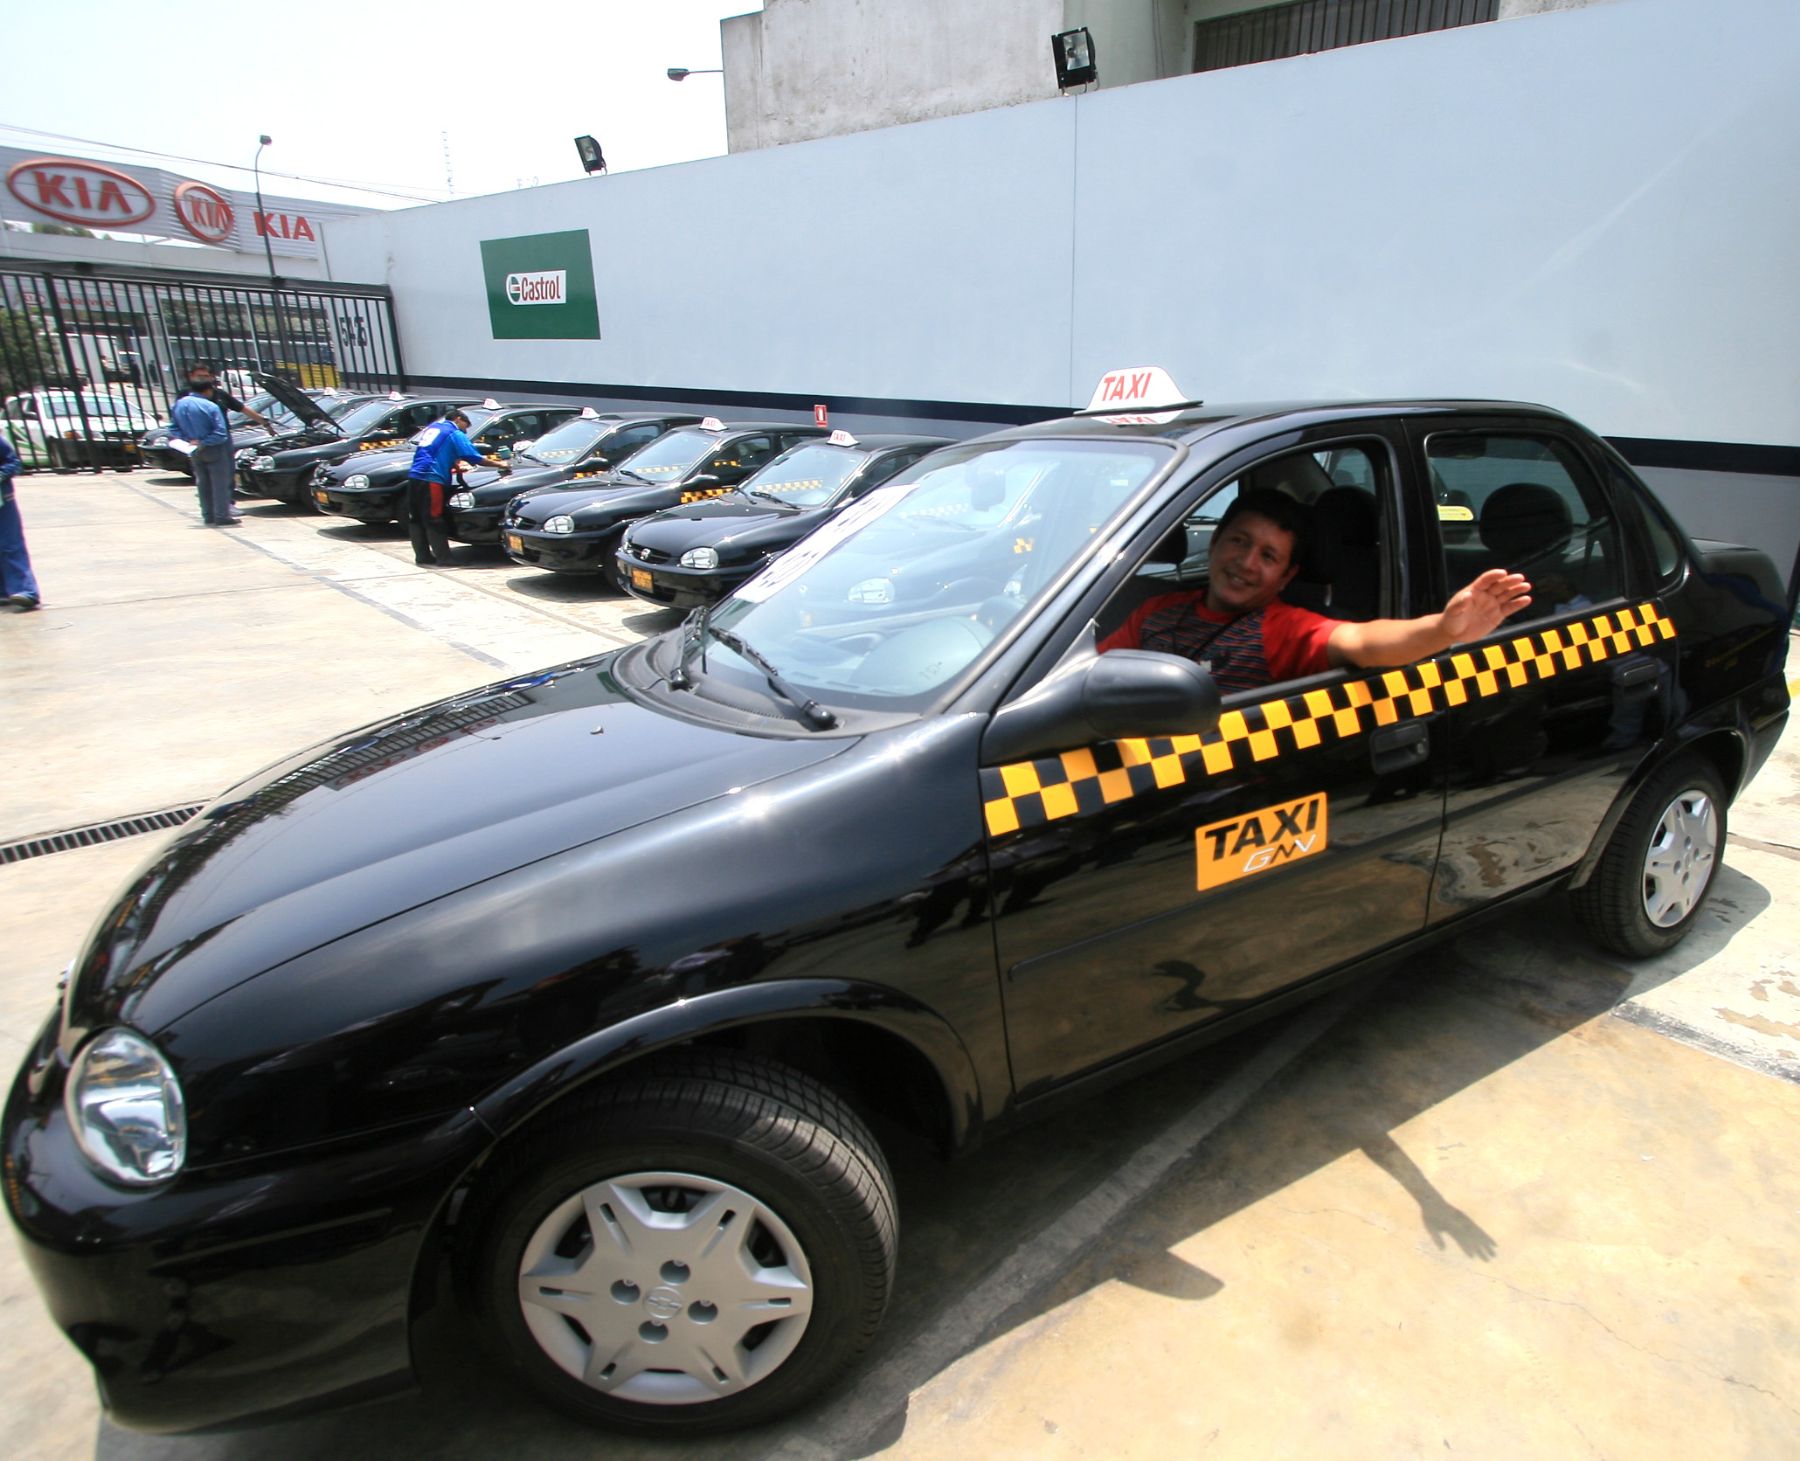 A taxistas no les alcanza requisito de antigüedad máxima de tres años para ingresar a servicio.